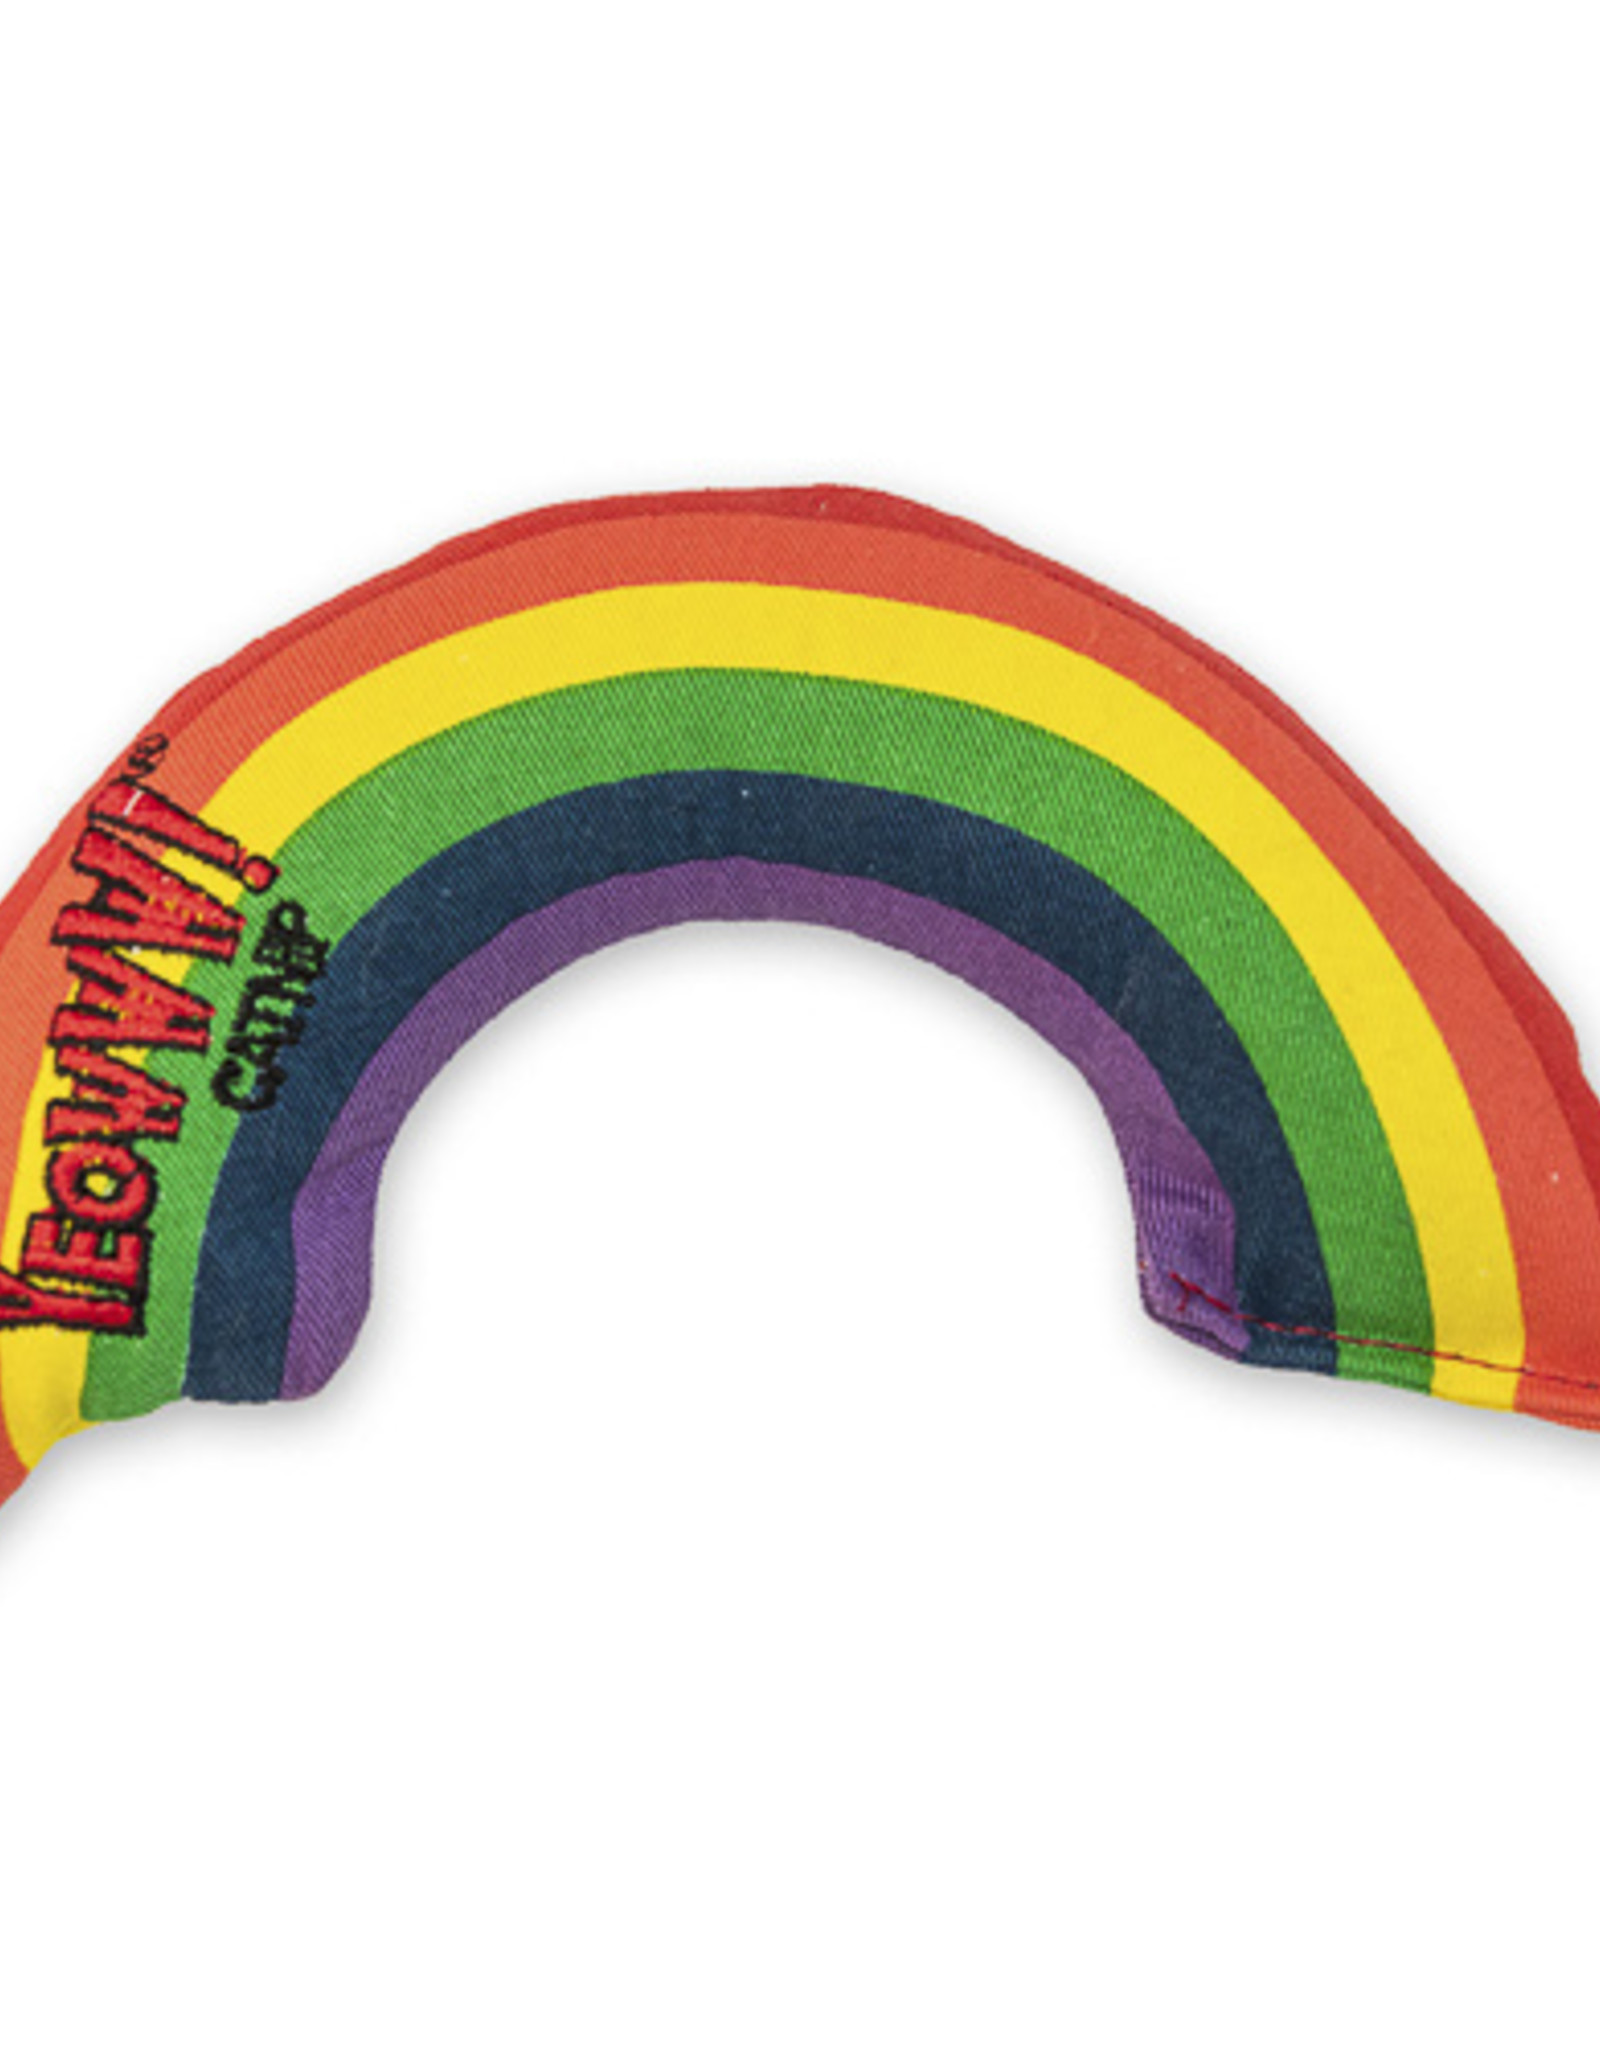 Vee Enterprises Yeowww! Rainbow Catnip Toy